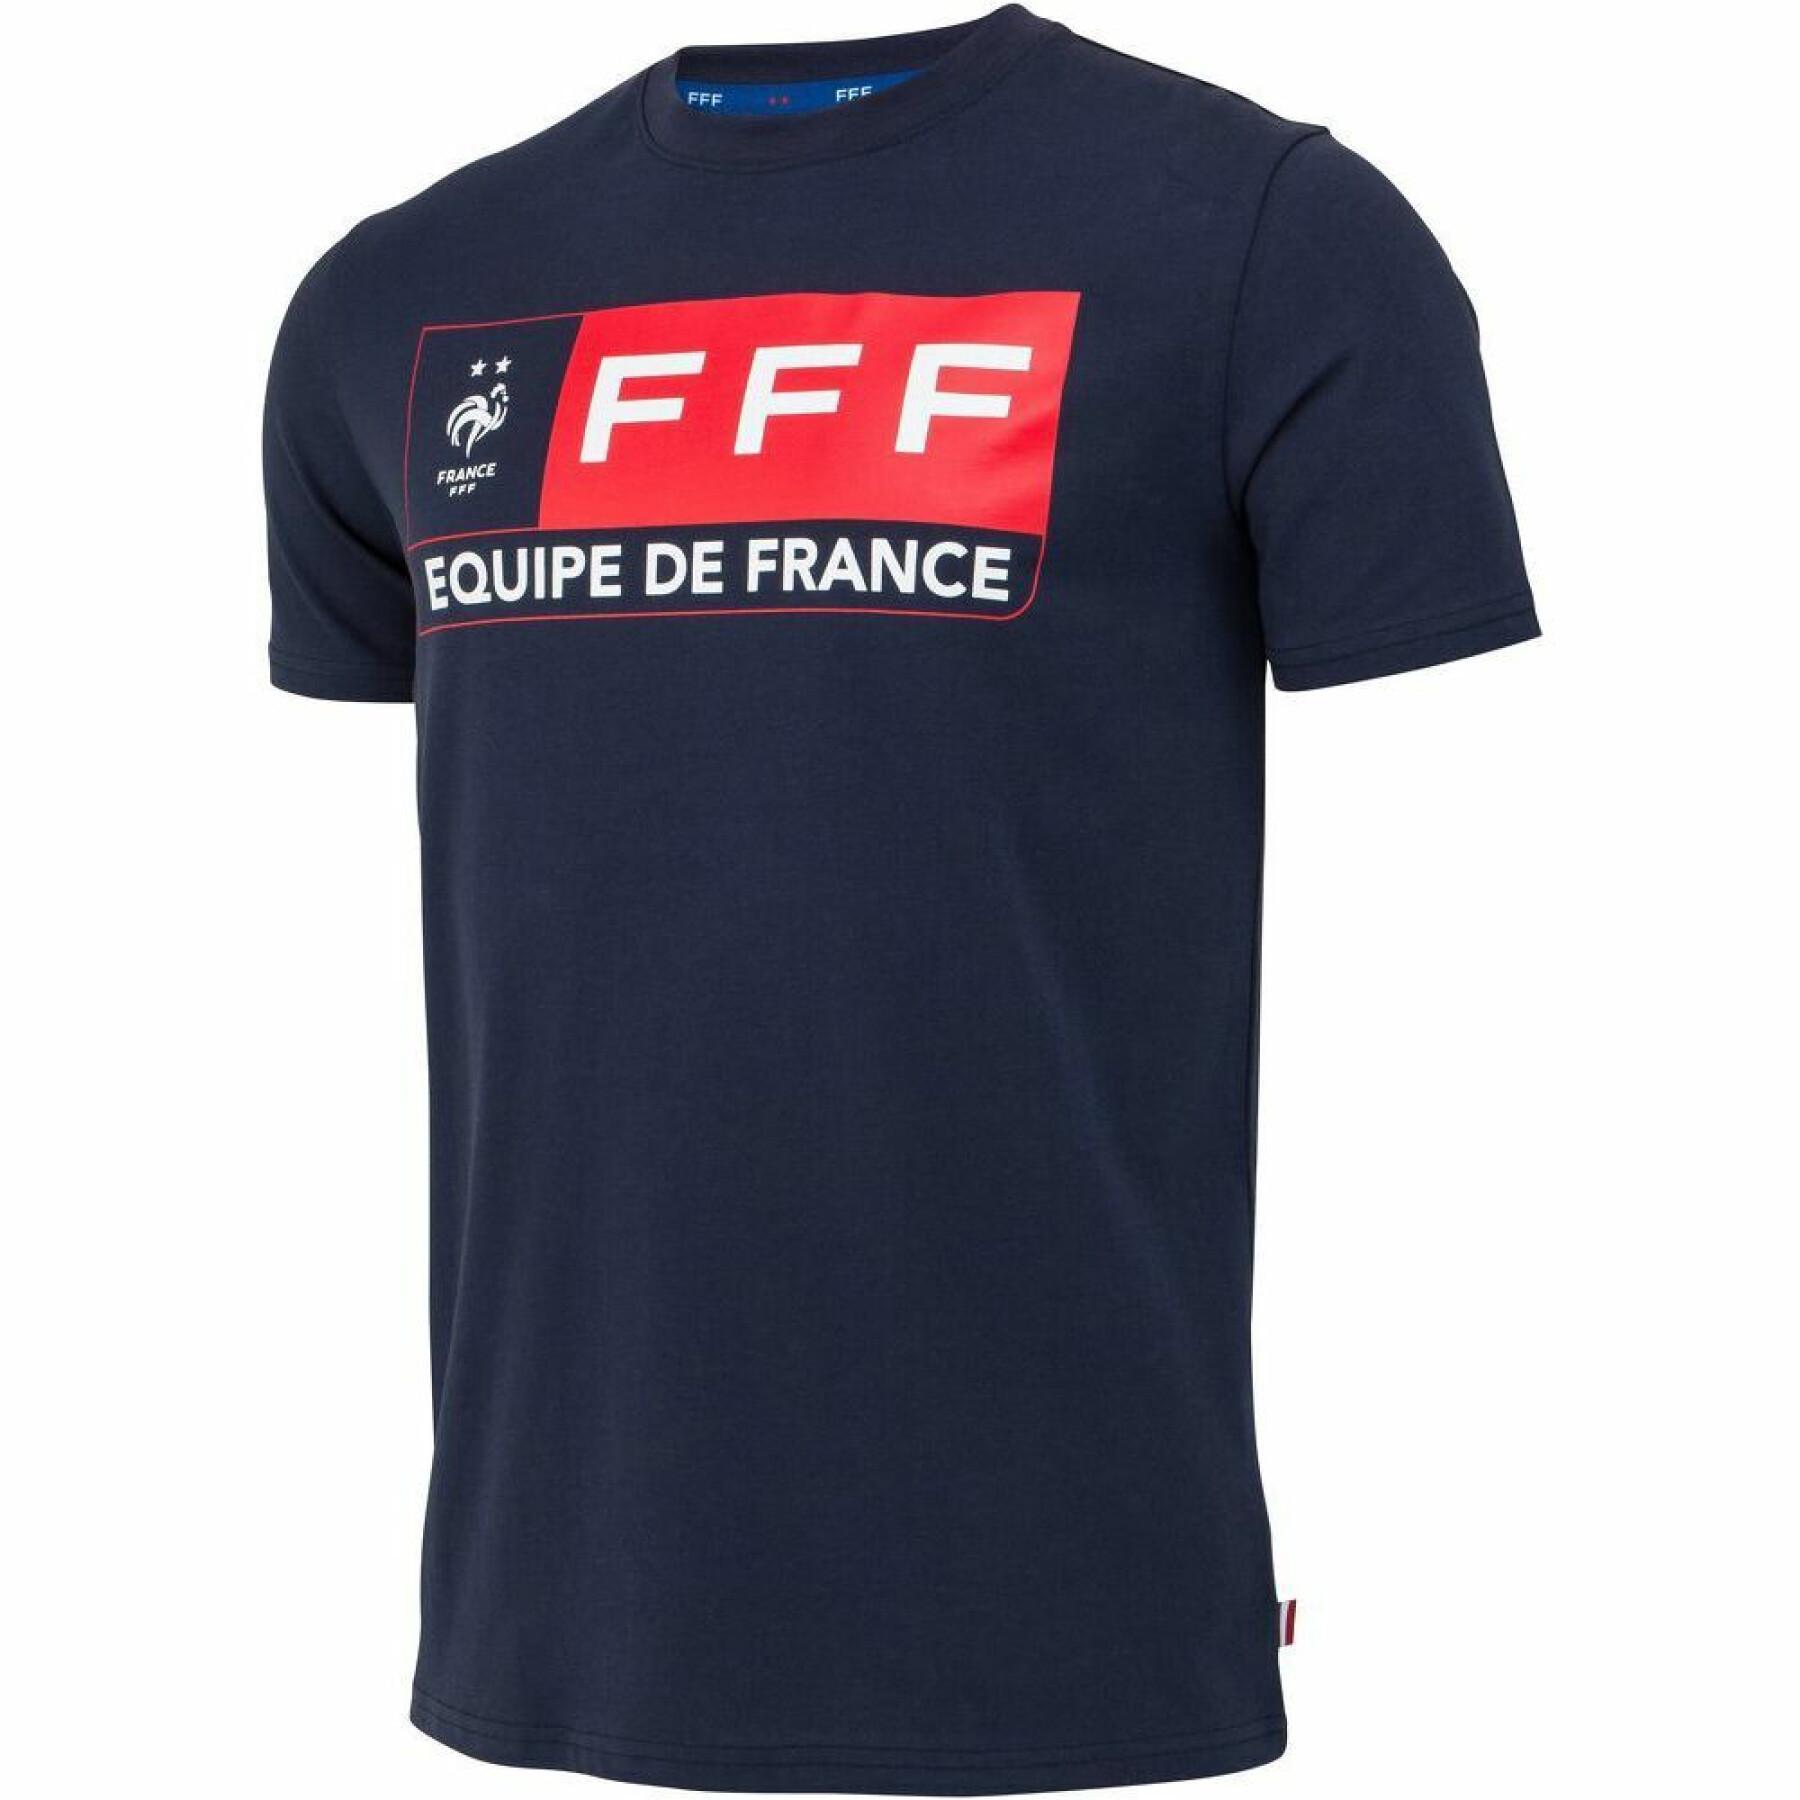 fff T-shirt do ventilador 2019